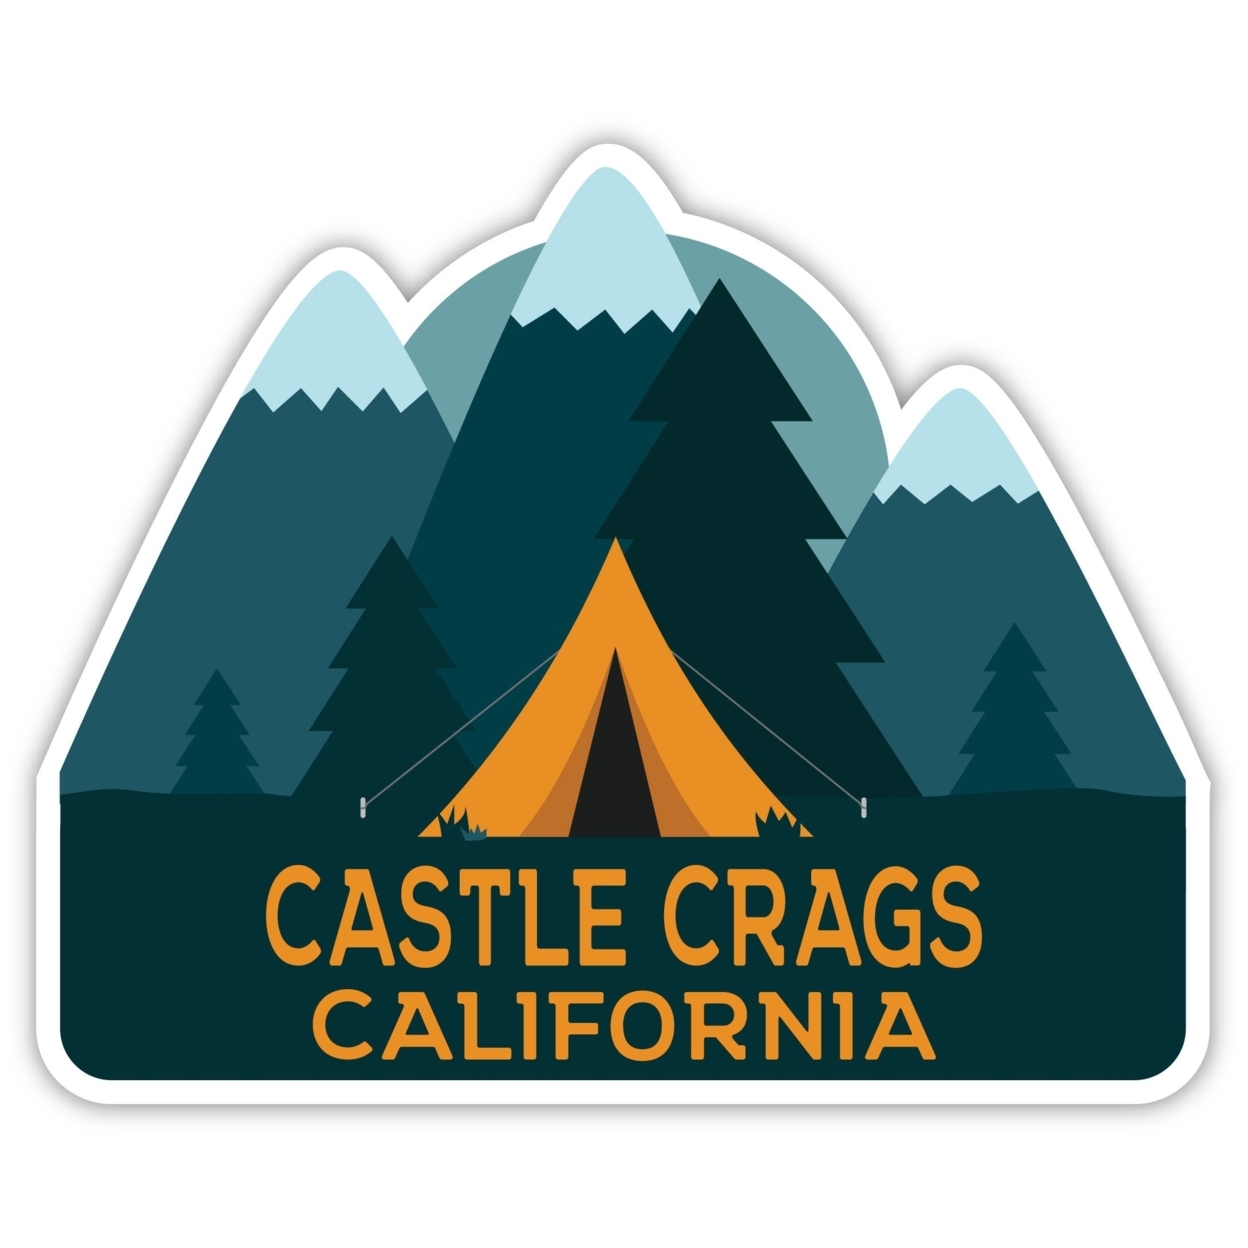 Castle Crags California Souvenir Decorative Stickers (Choose Theme And Size) - Single Unit, 2-Inch, Tent